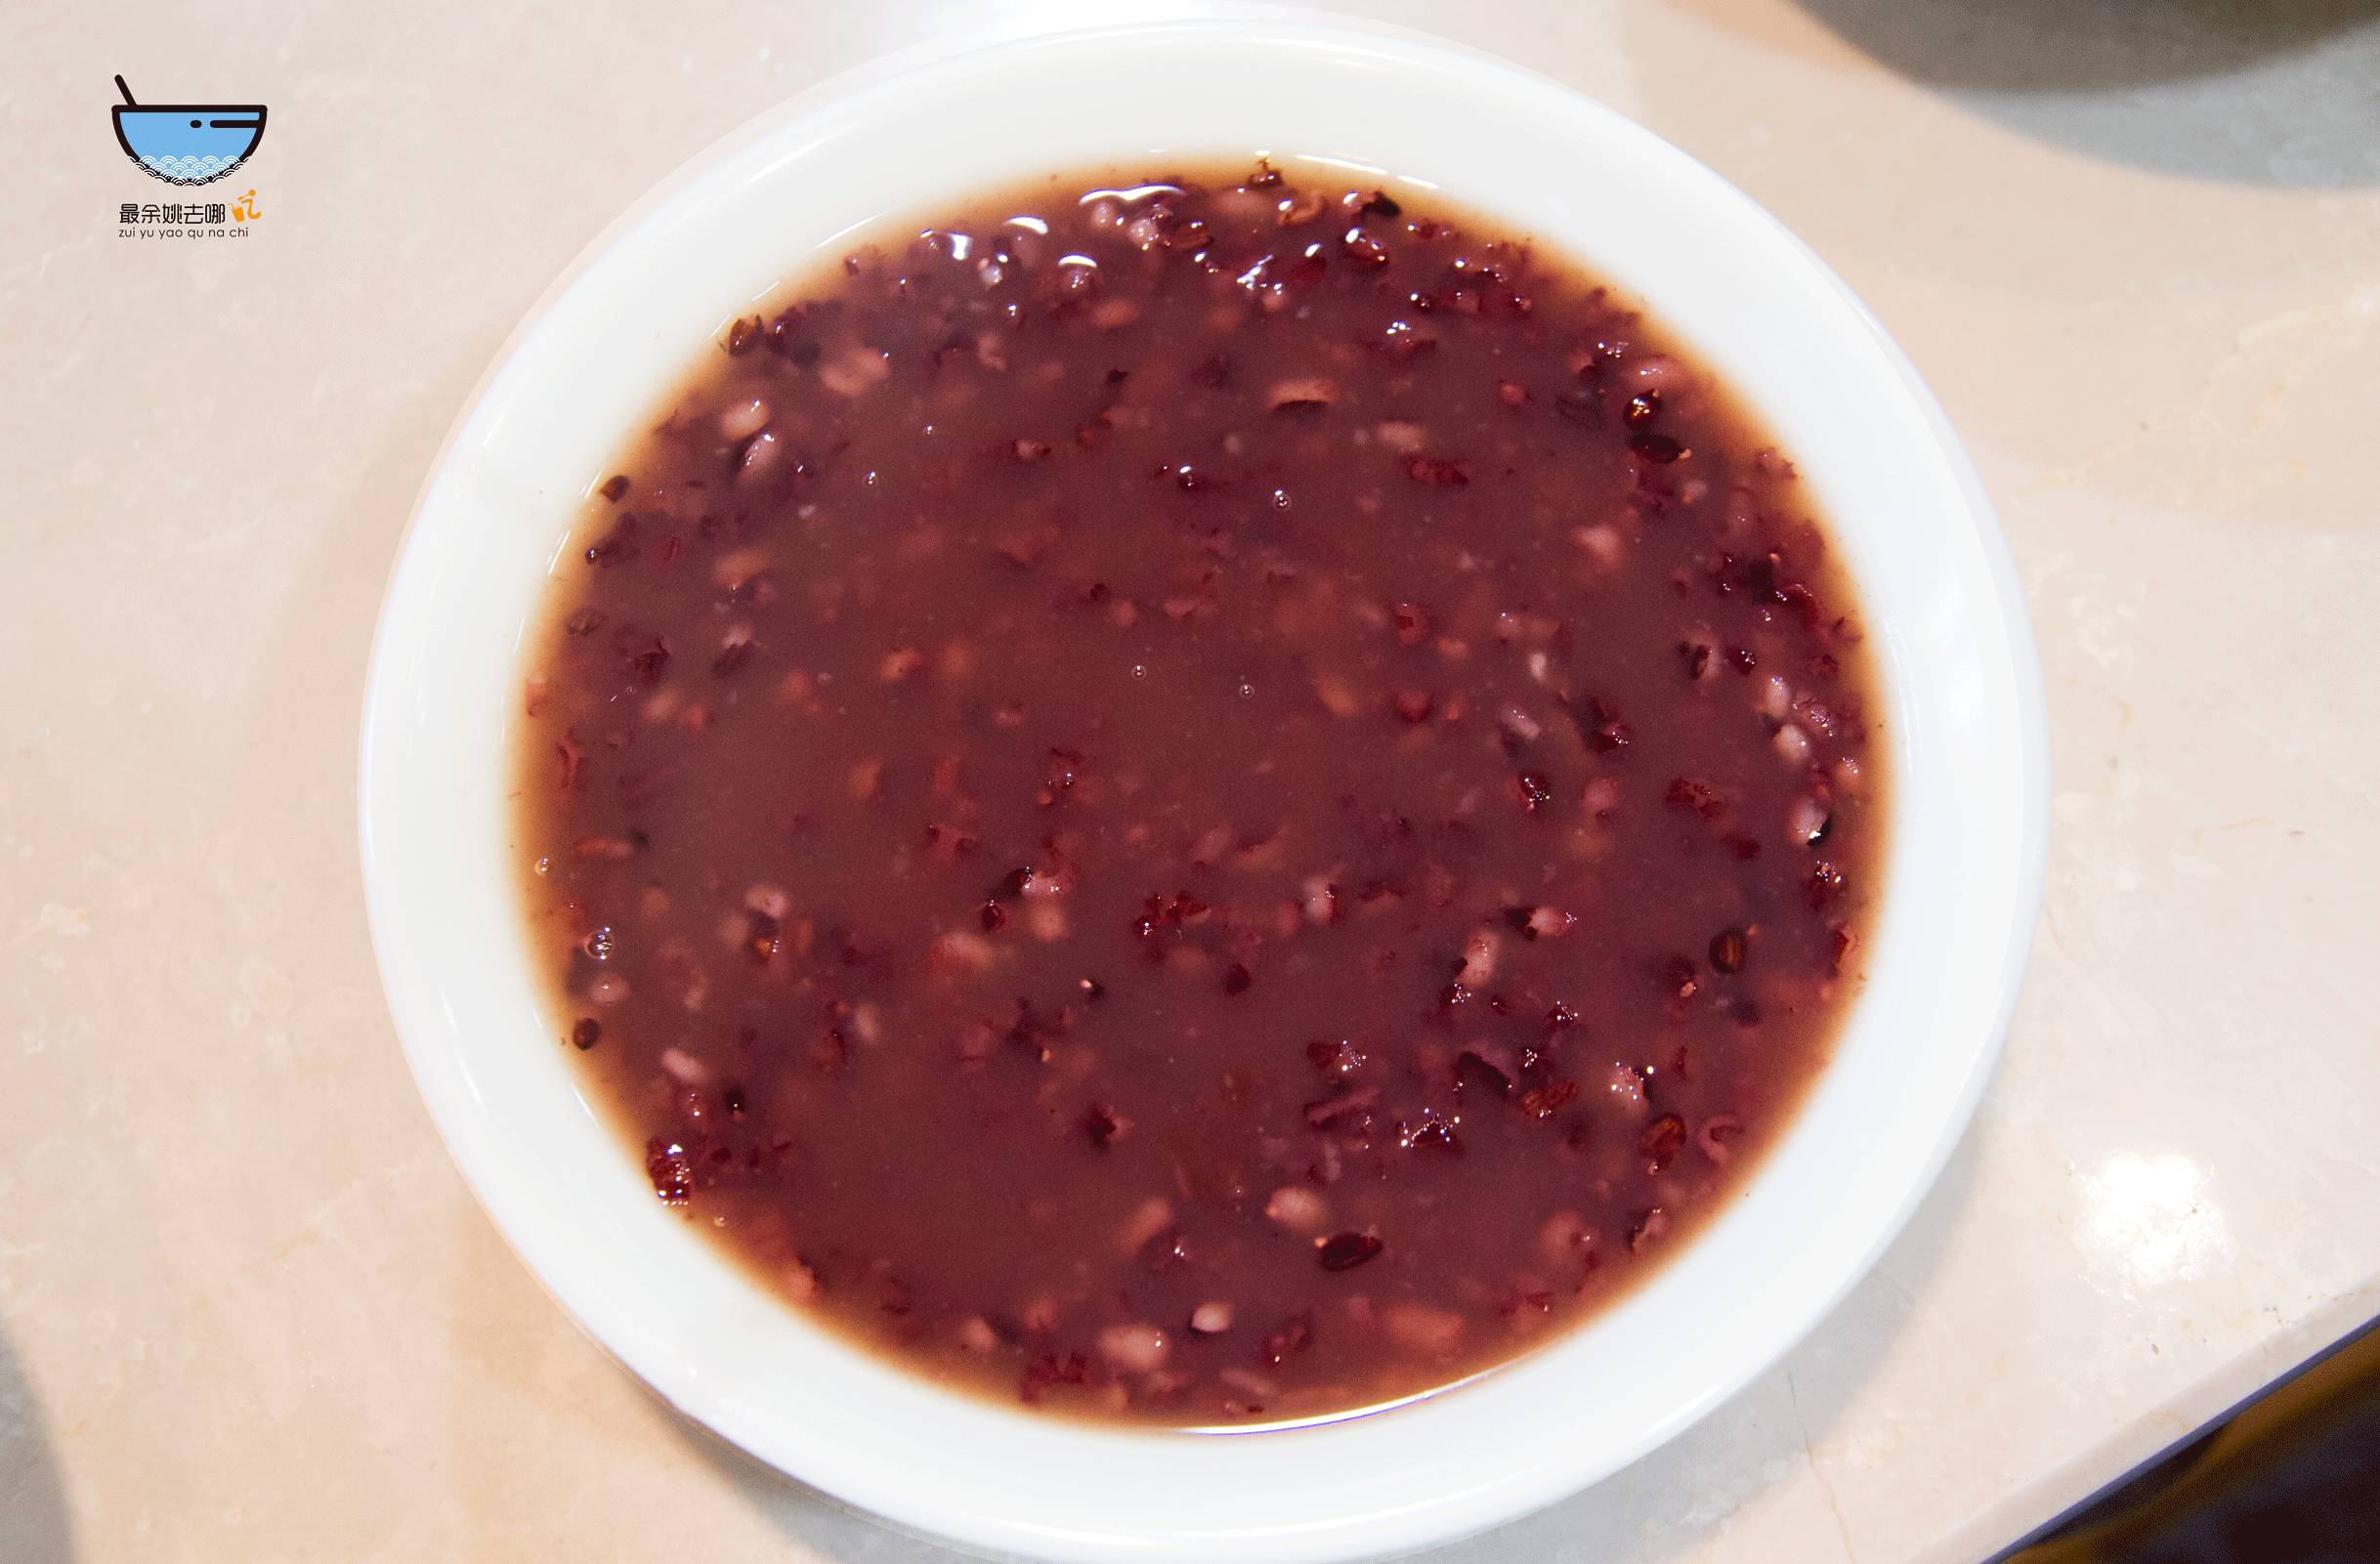 黑米粥粥是世间第一补人之物喝碗热粥,保暖养身